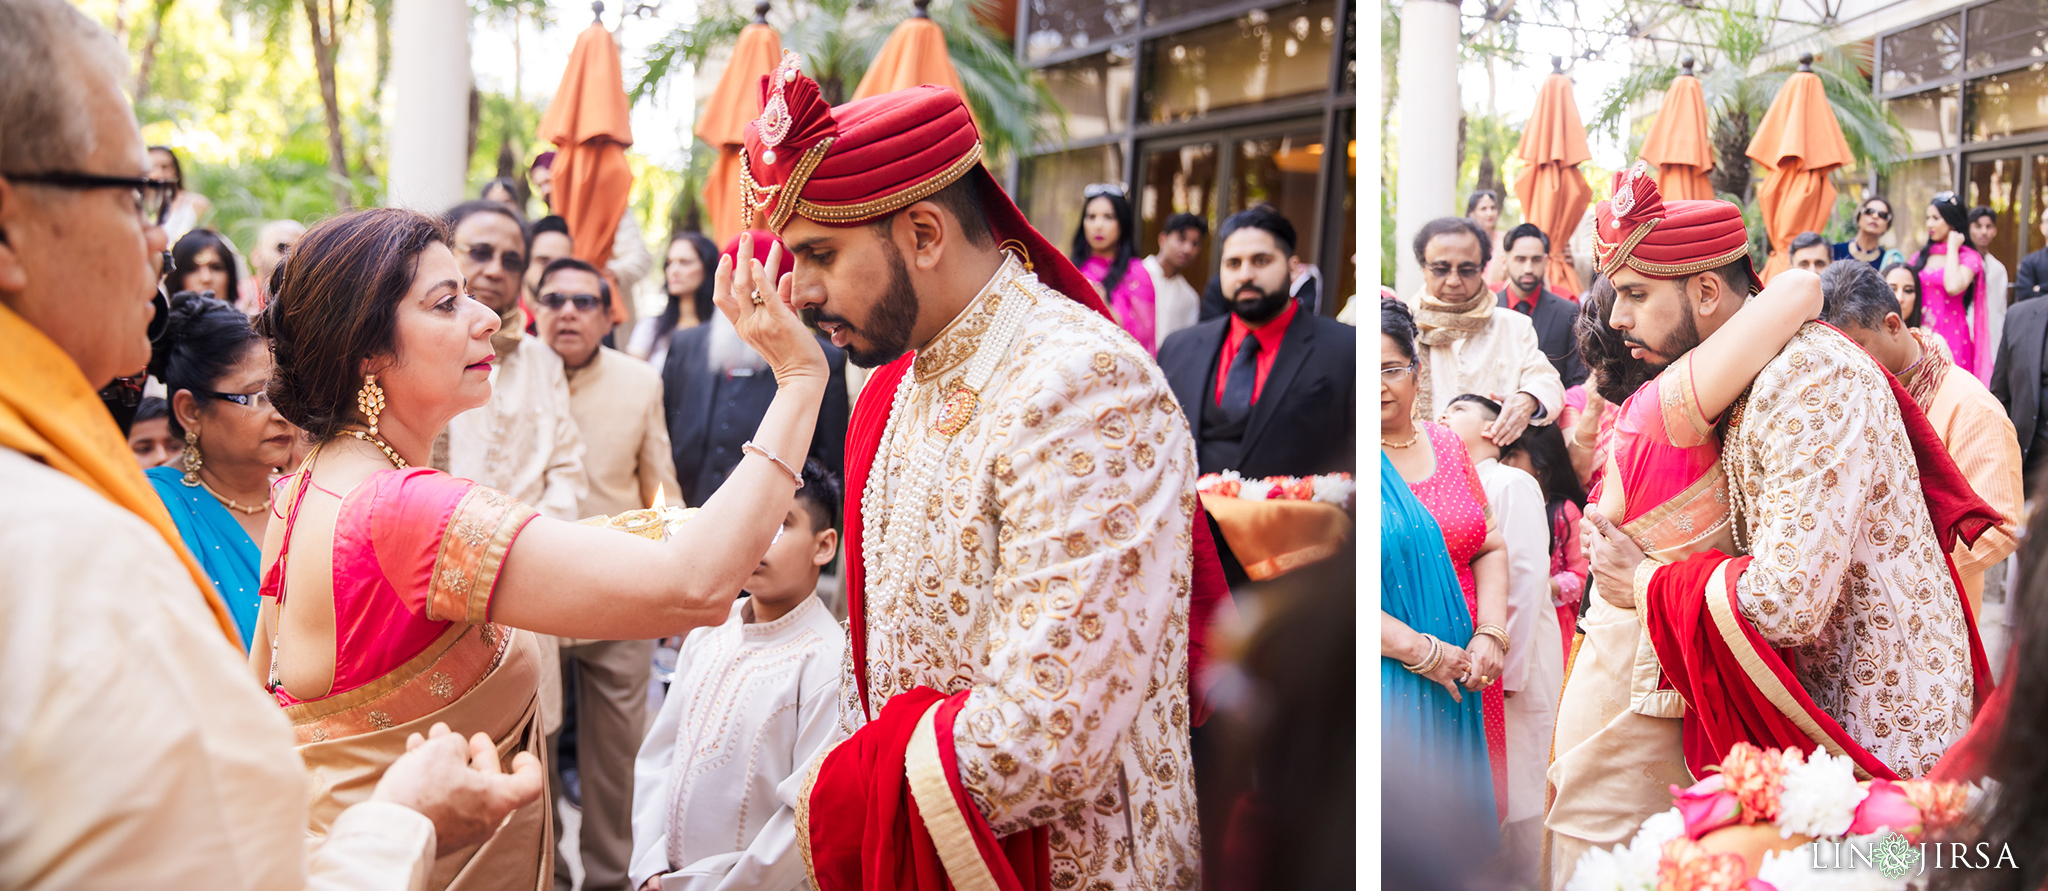 17 Hotel Irvine Punjabi Hindu Indian Wedding Photography